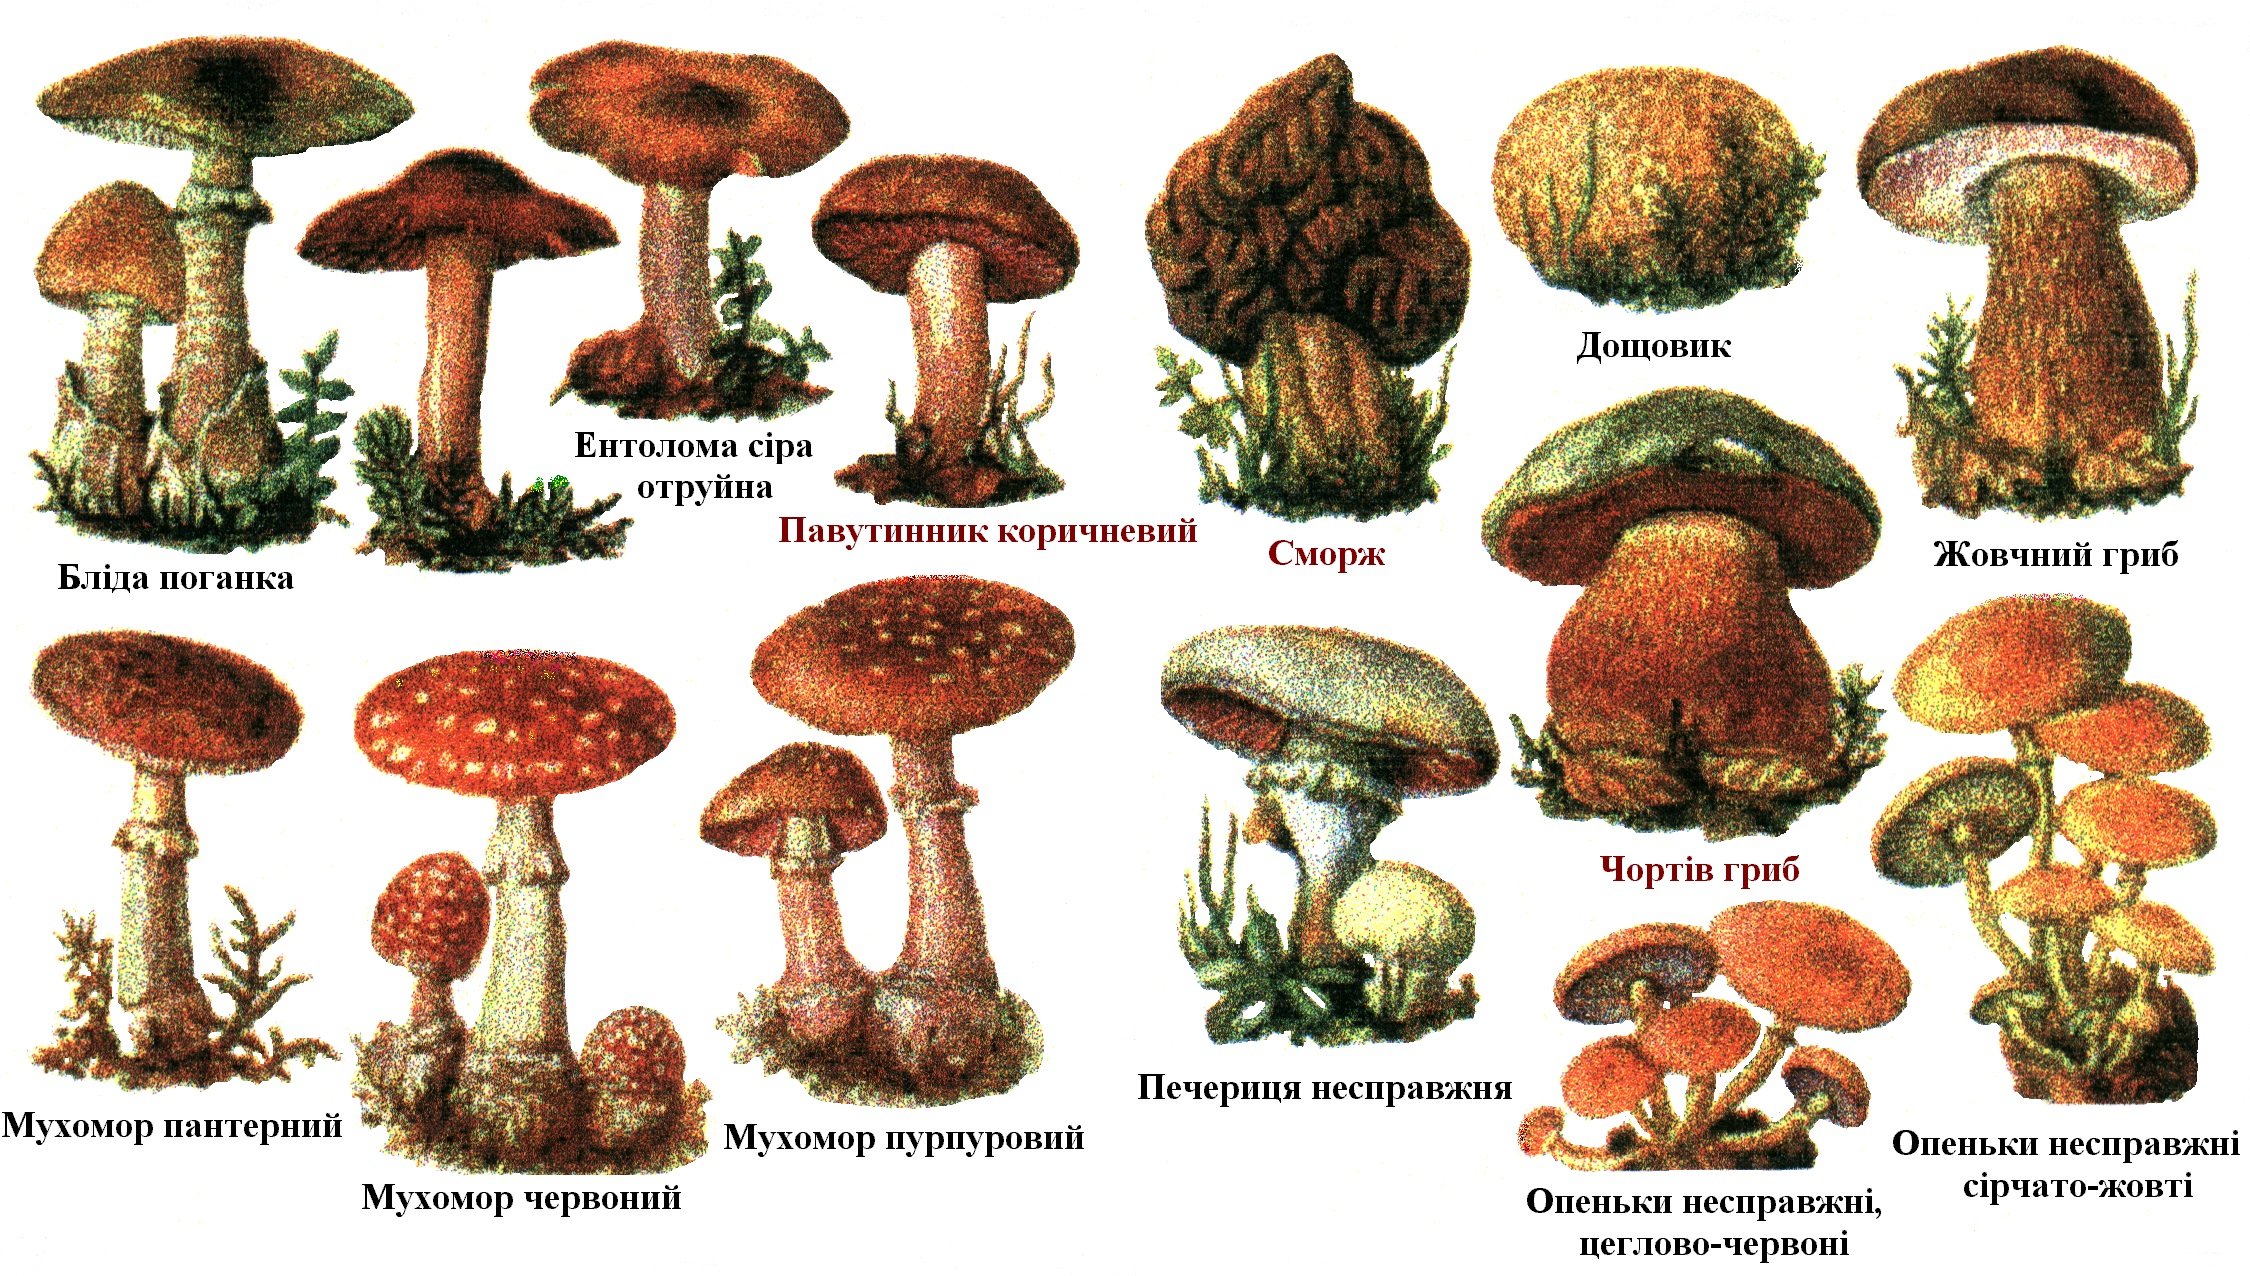 Название некоторых грибов. Съедобные условно съедобные и несъедобные грибы. Съедобные грибы и несъедобные грибы. Условносьедобные грибы и несъедобные. Условно съедобные грибы названия грибов.